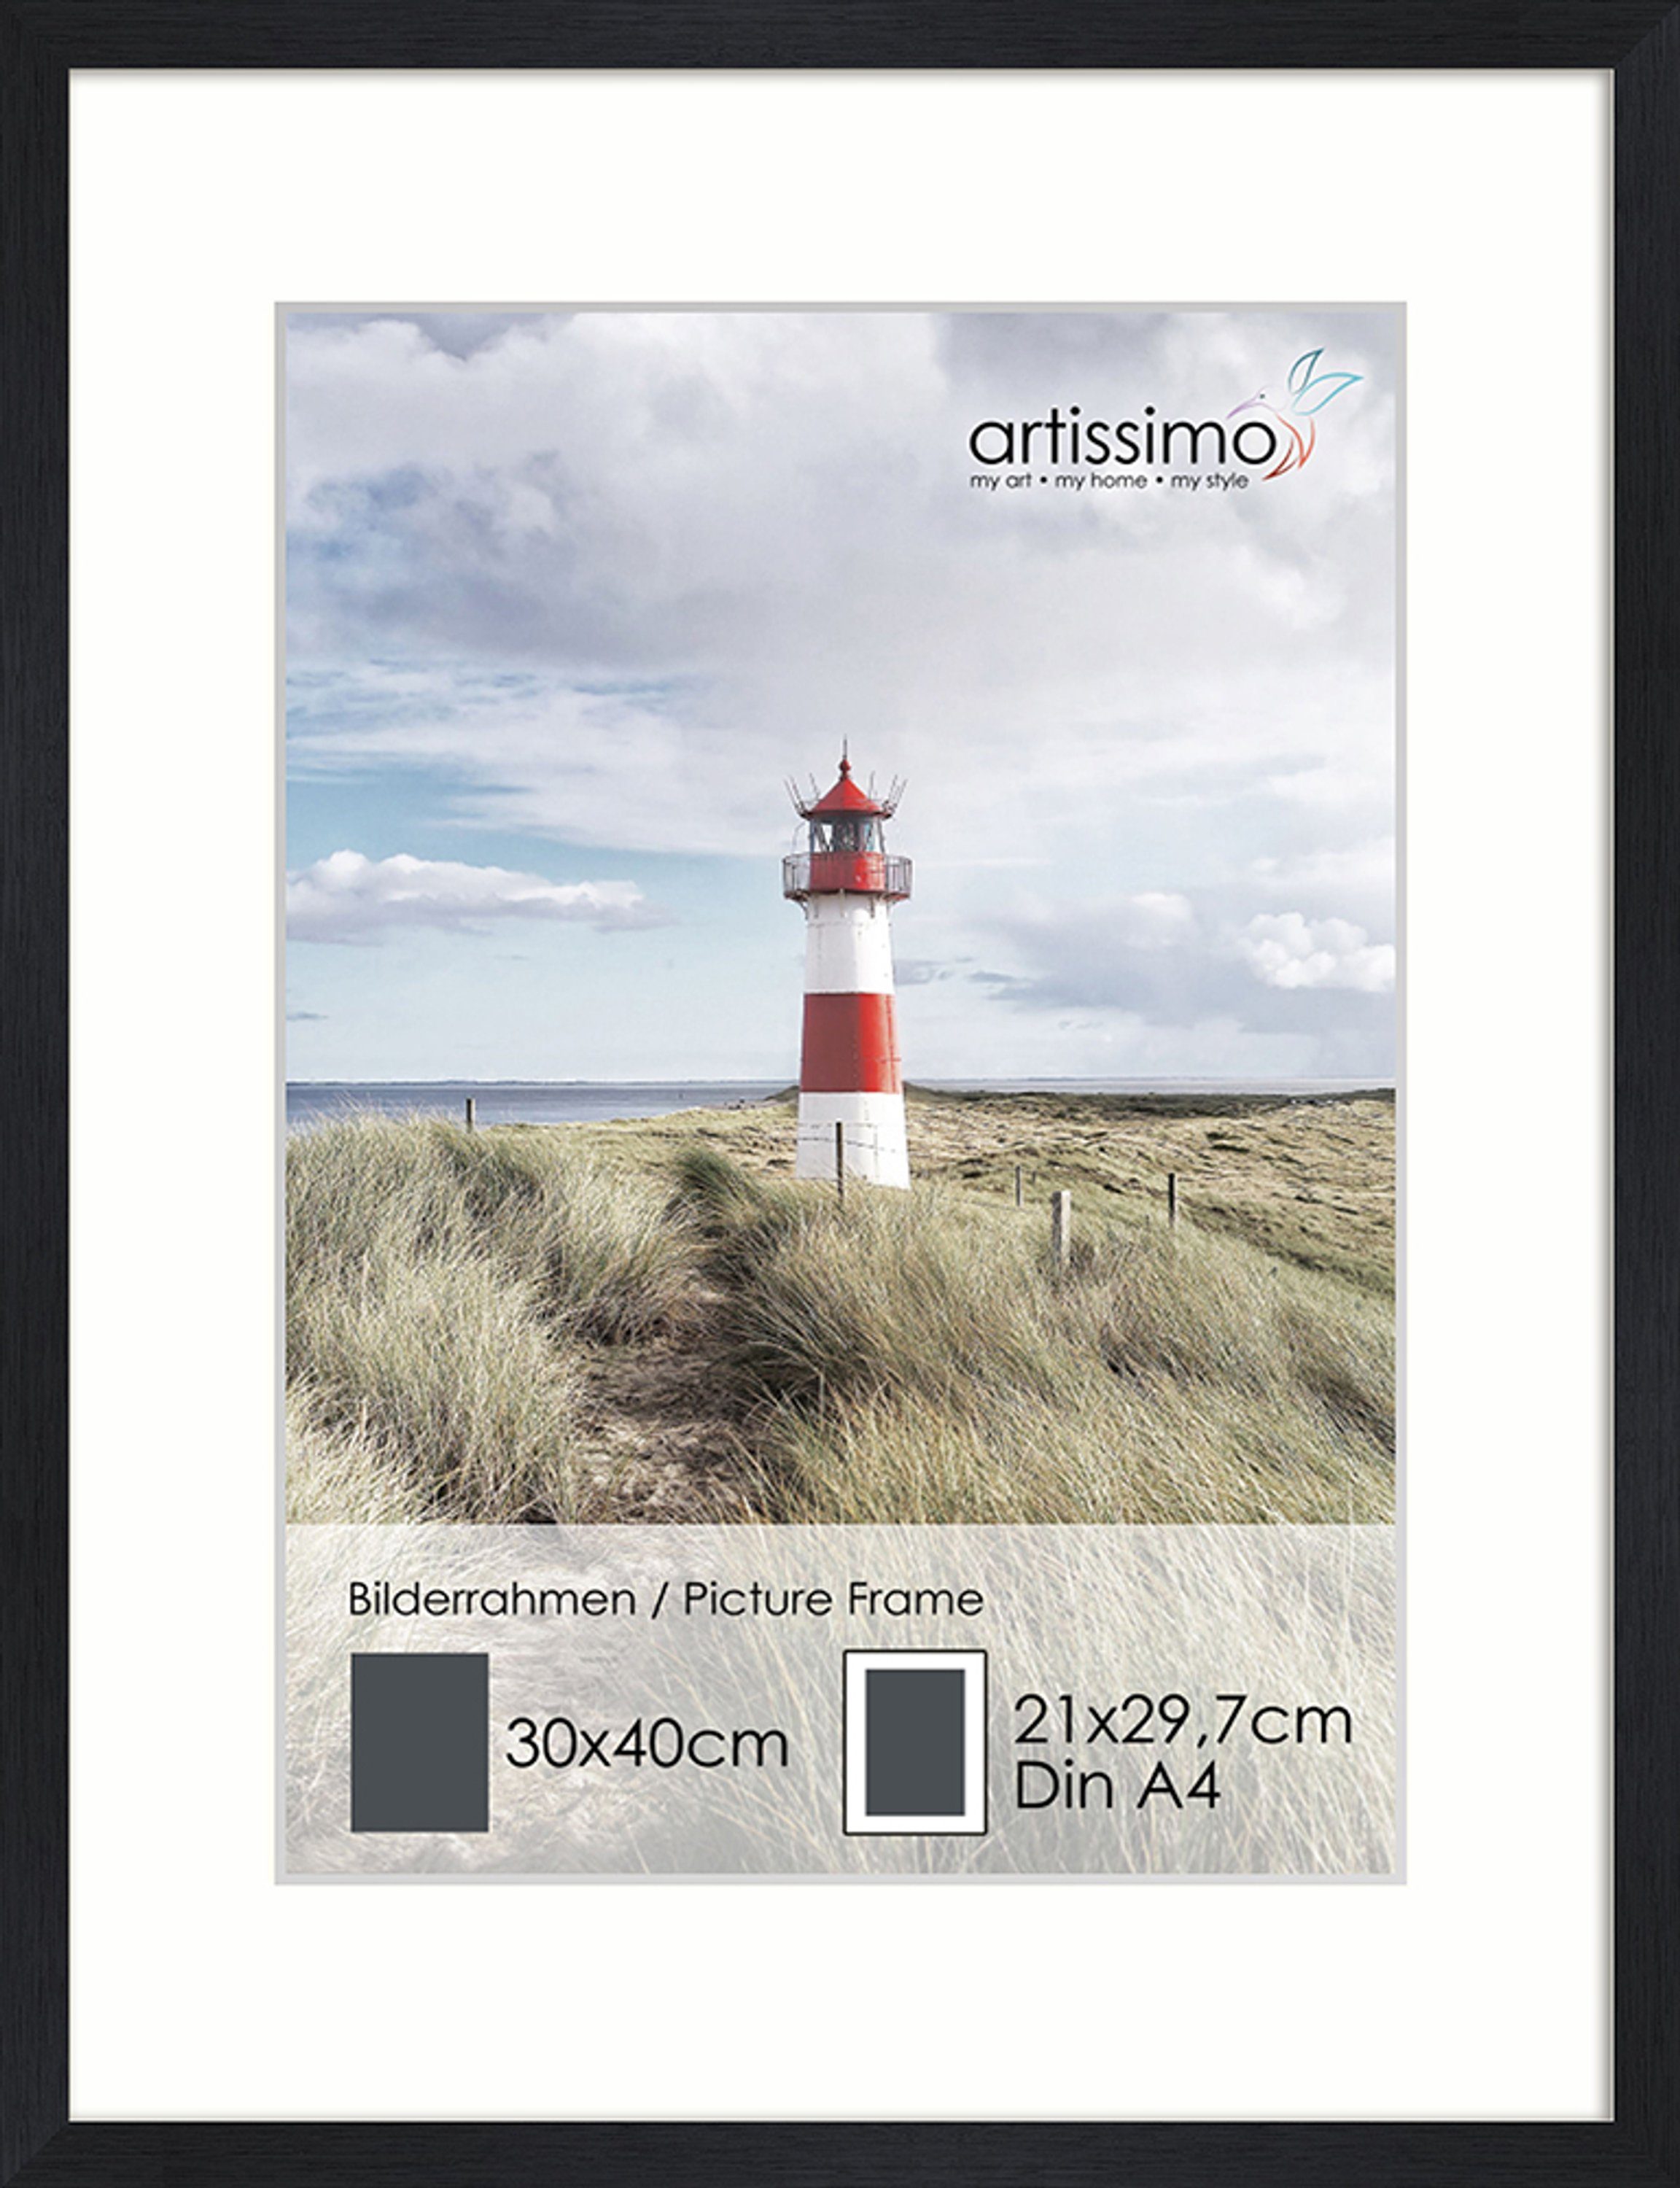 artissimo Bilderrahmen Rahmen 30x40cm inkl Passepartout für Poster DinA4 Bilderrahmen Schwarz